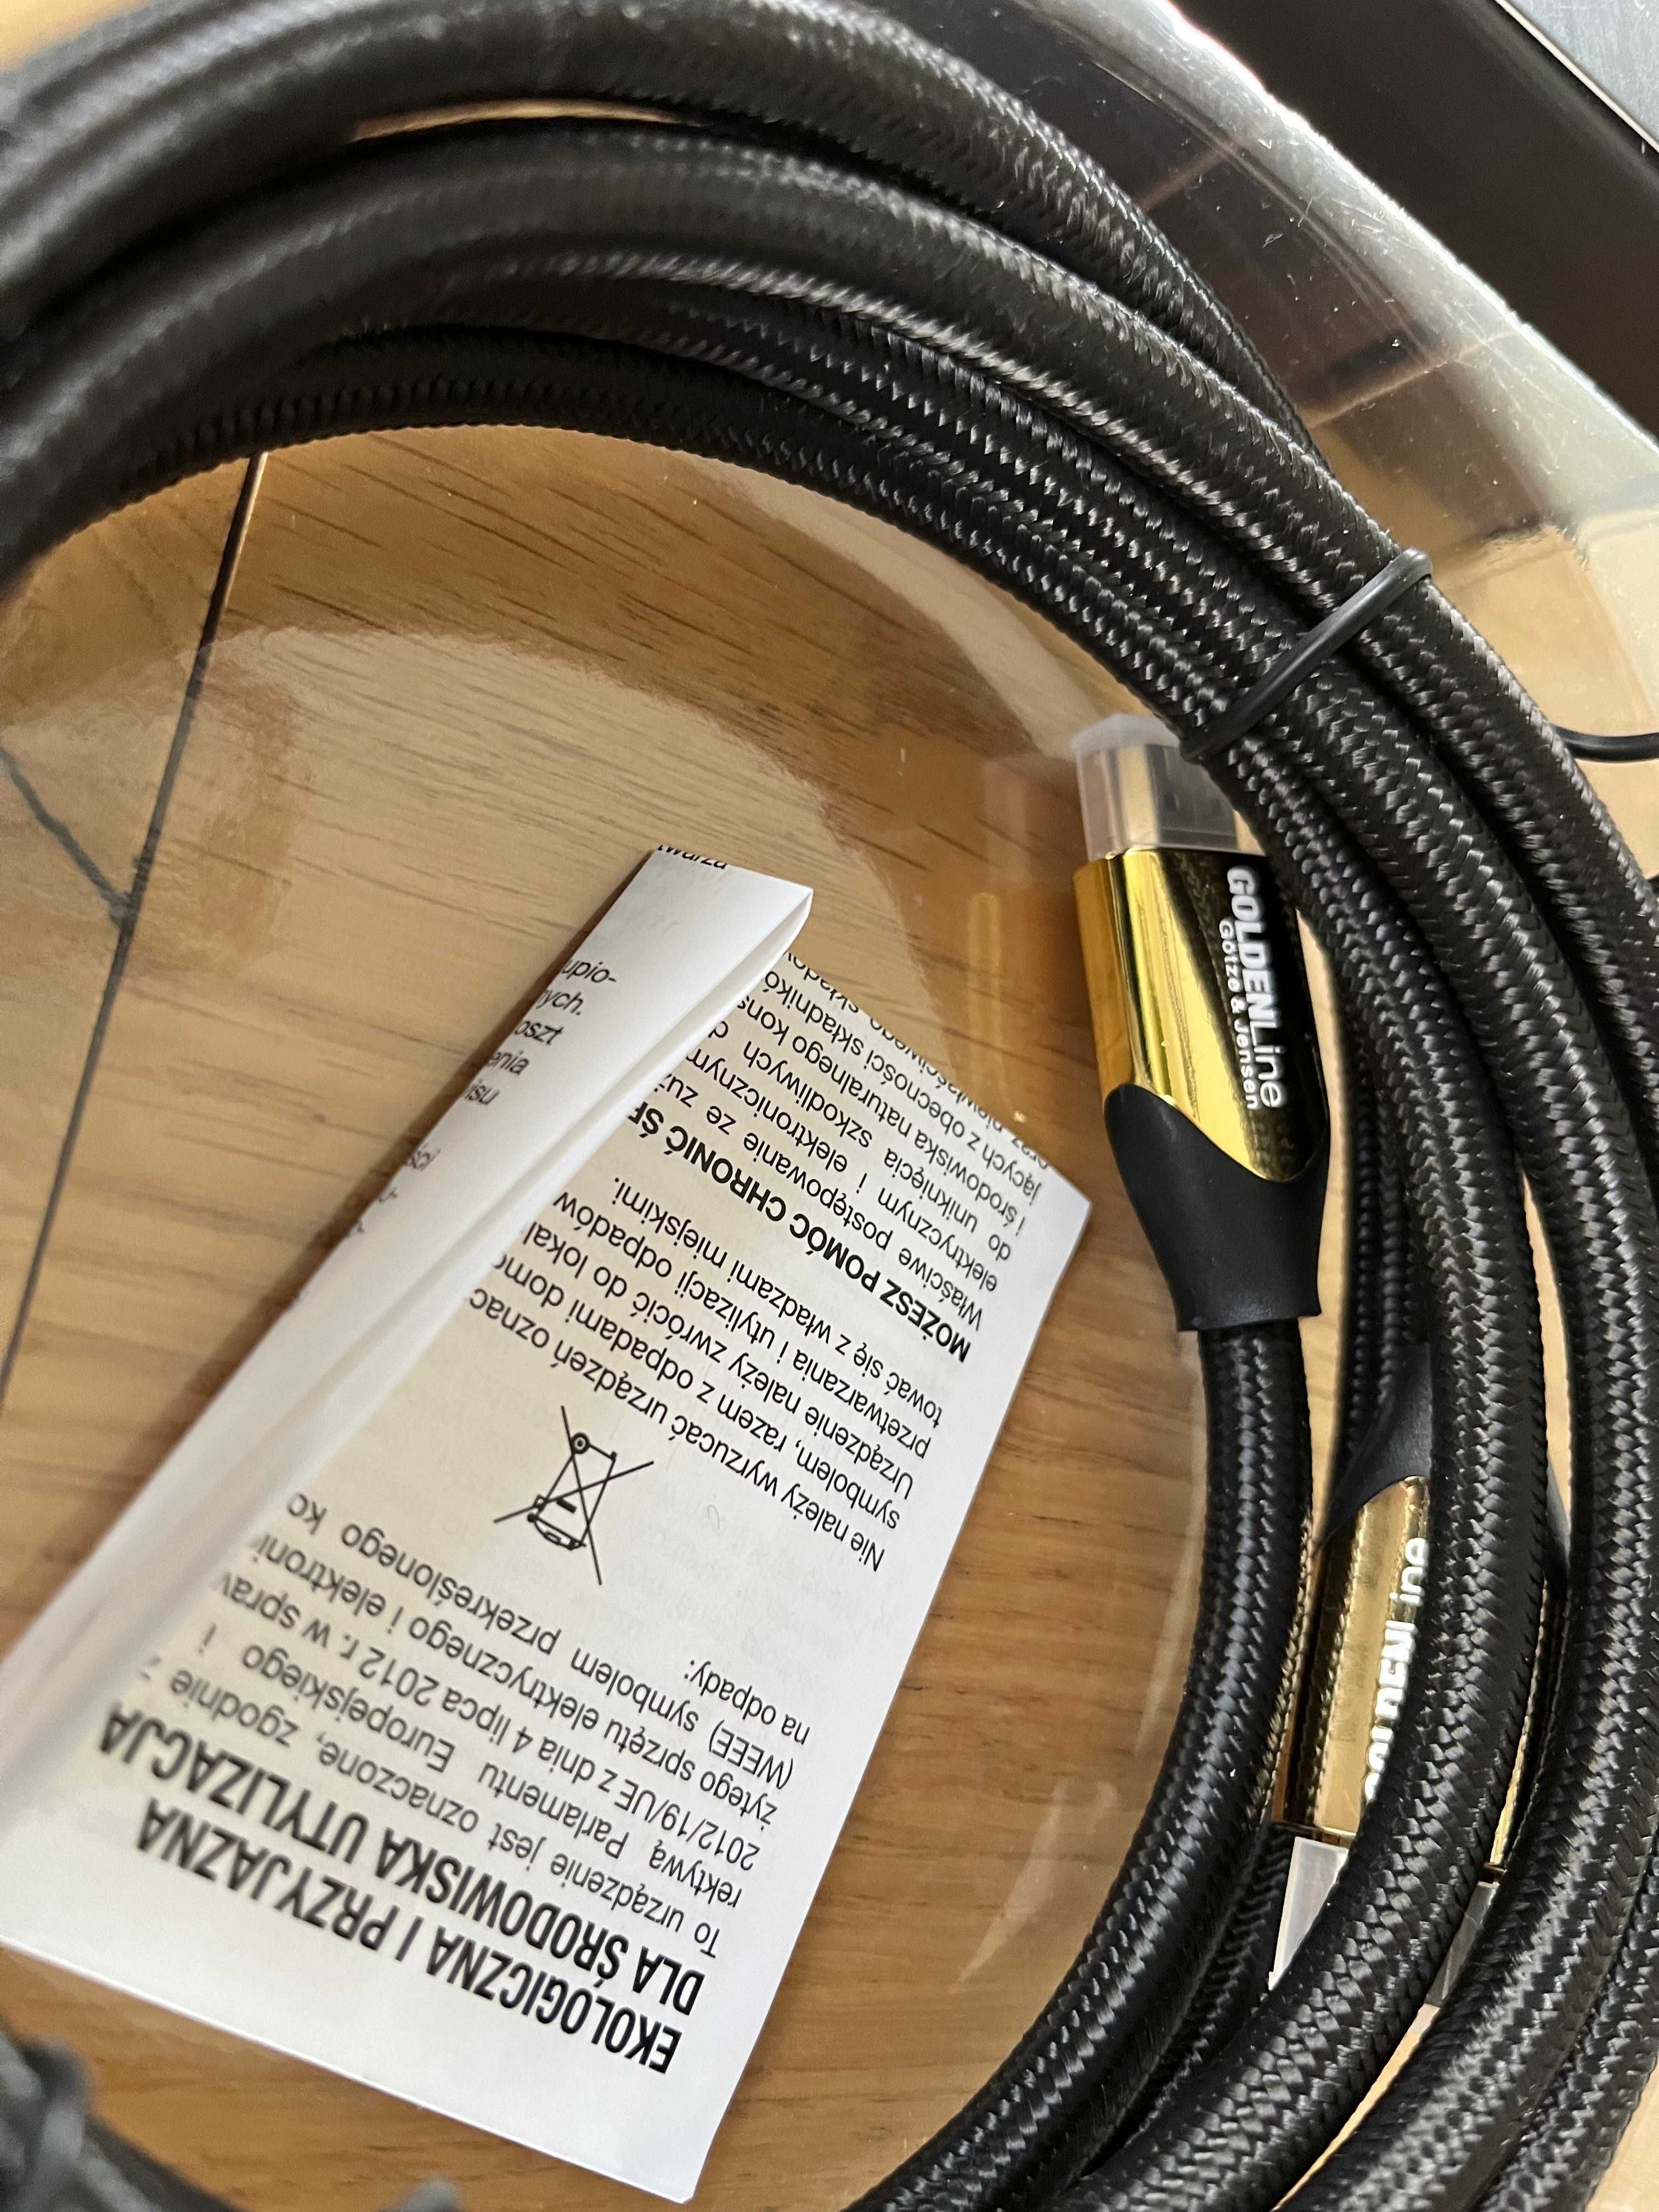 kabel HDMI - złote końcówki, 2m, Gotze & Jensen (GoldenLine) - NOWE